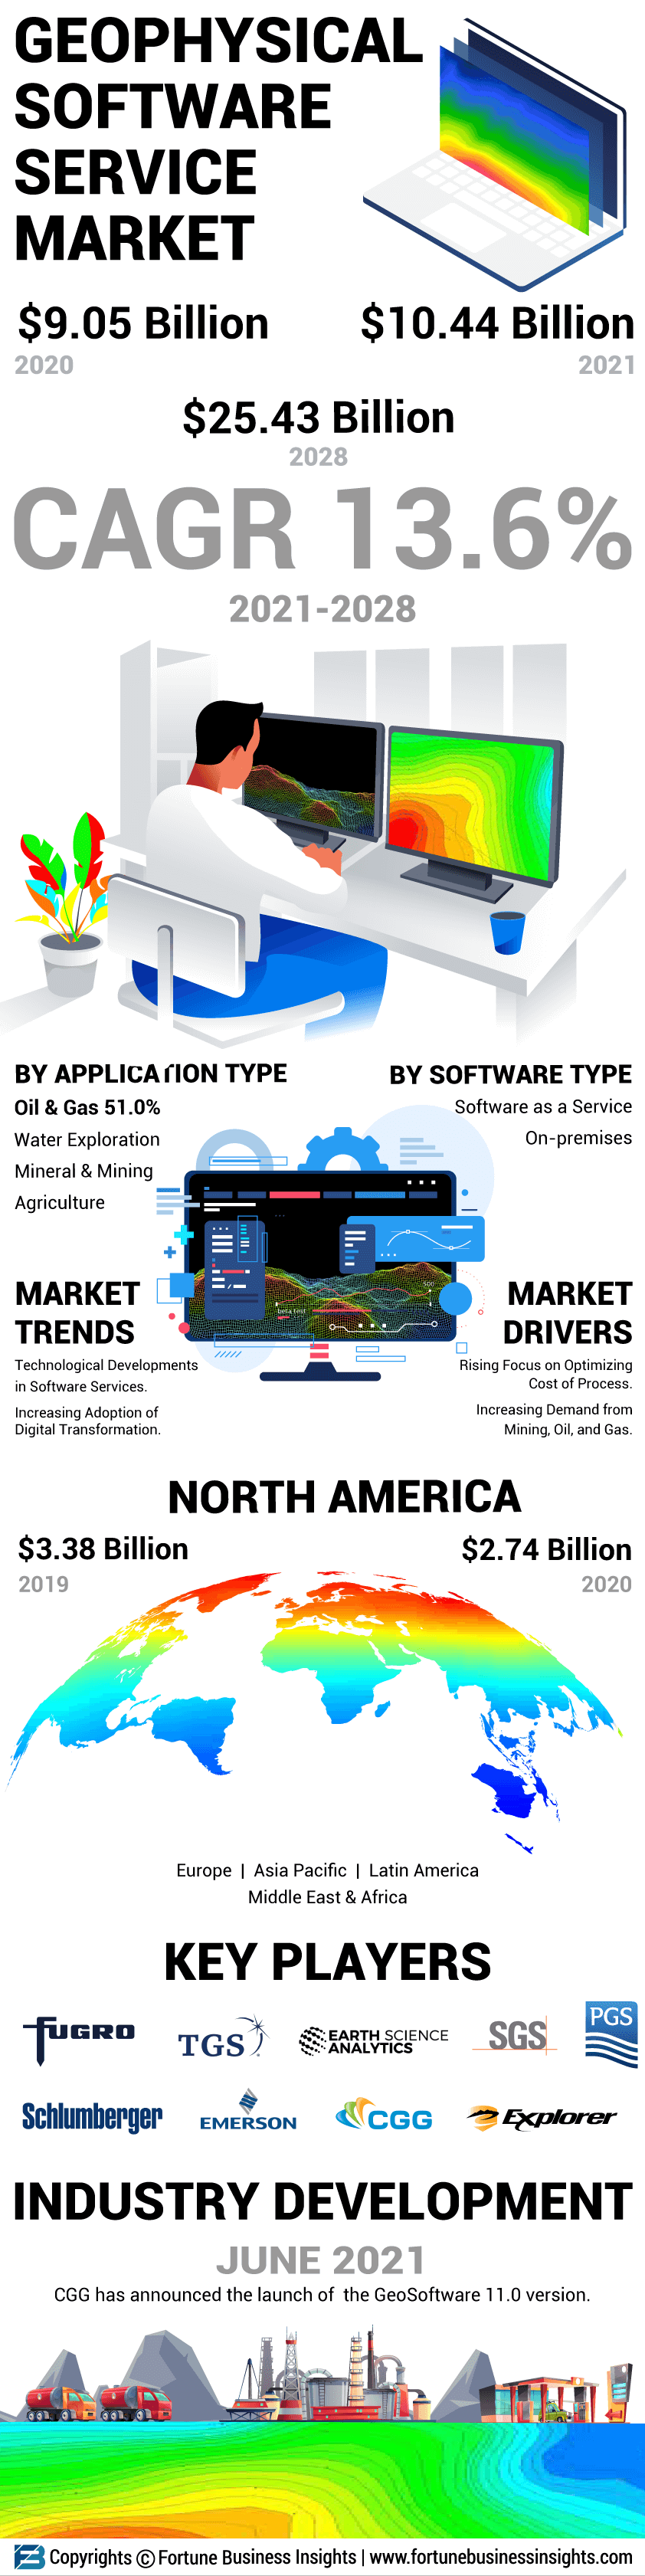 Geophysical Software Service Market